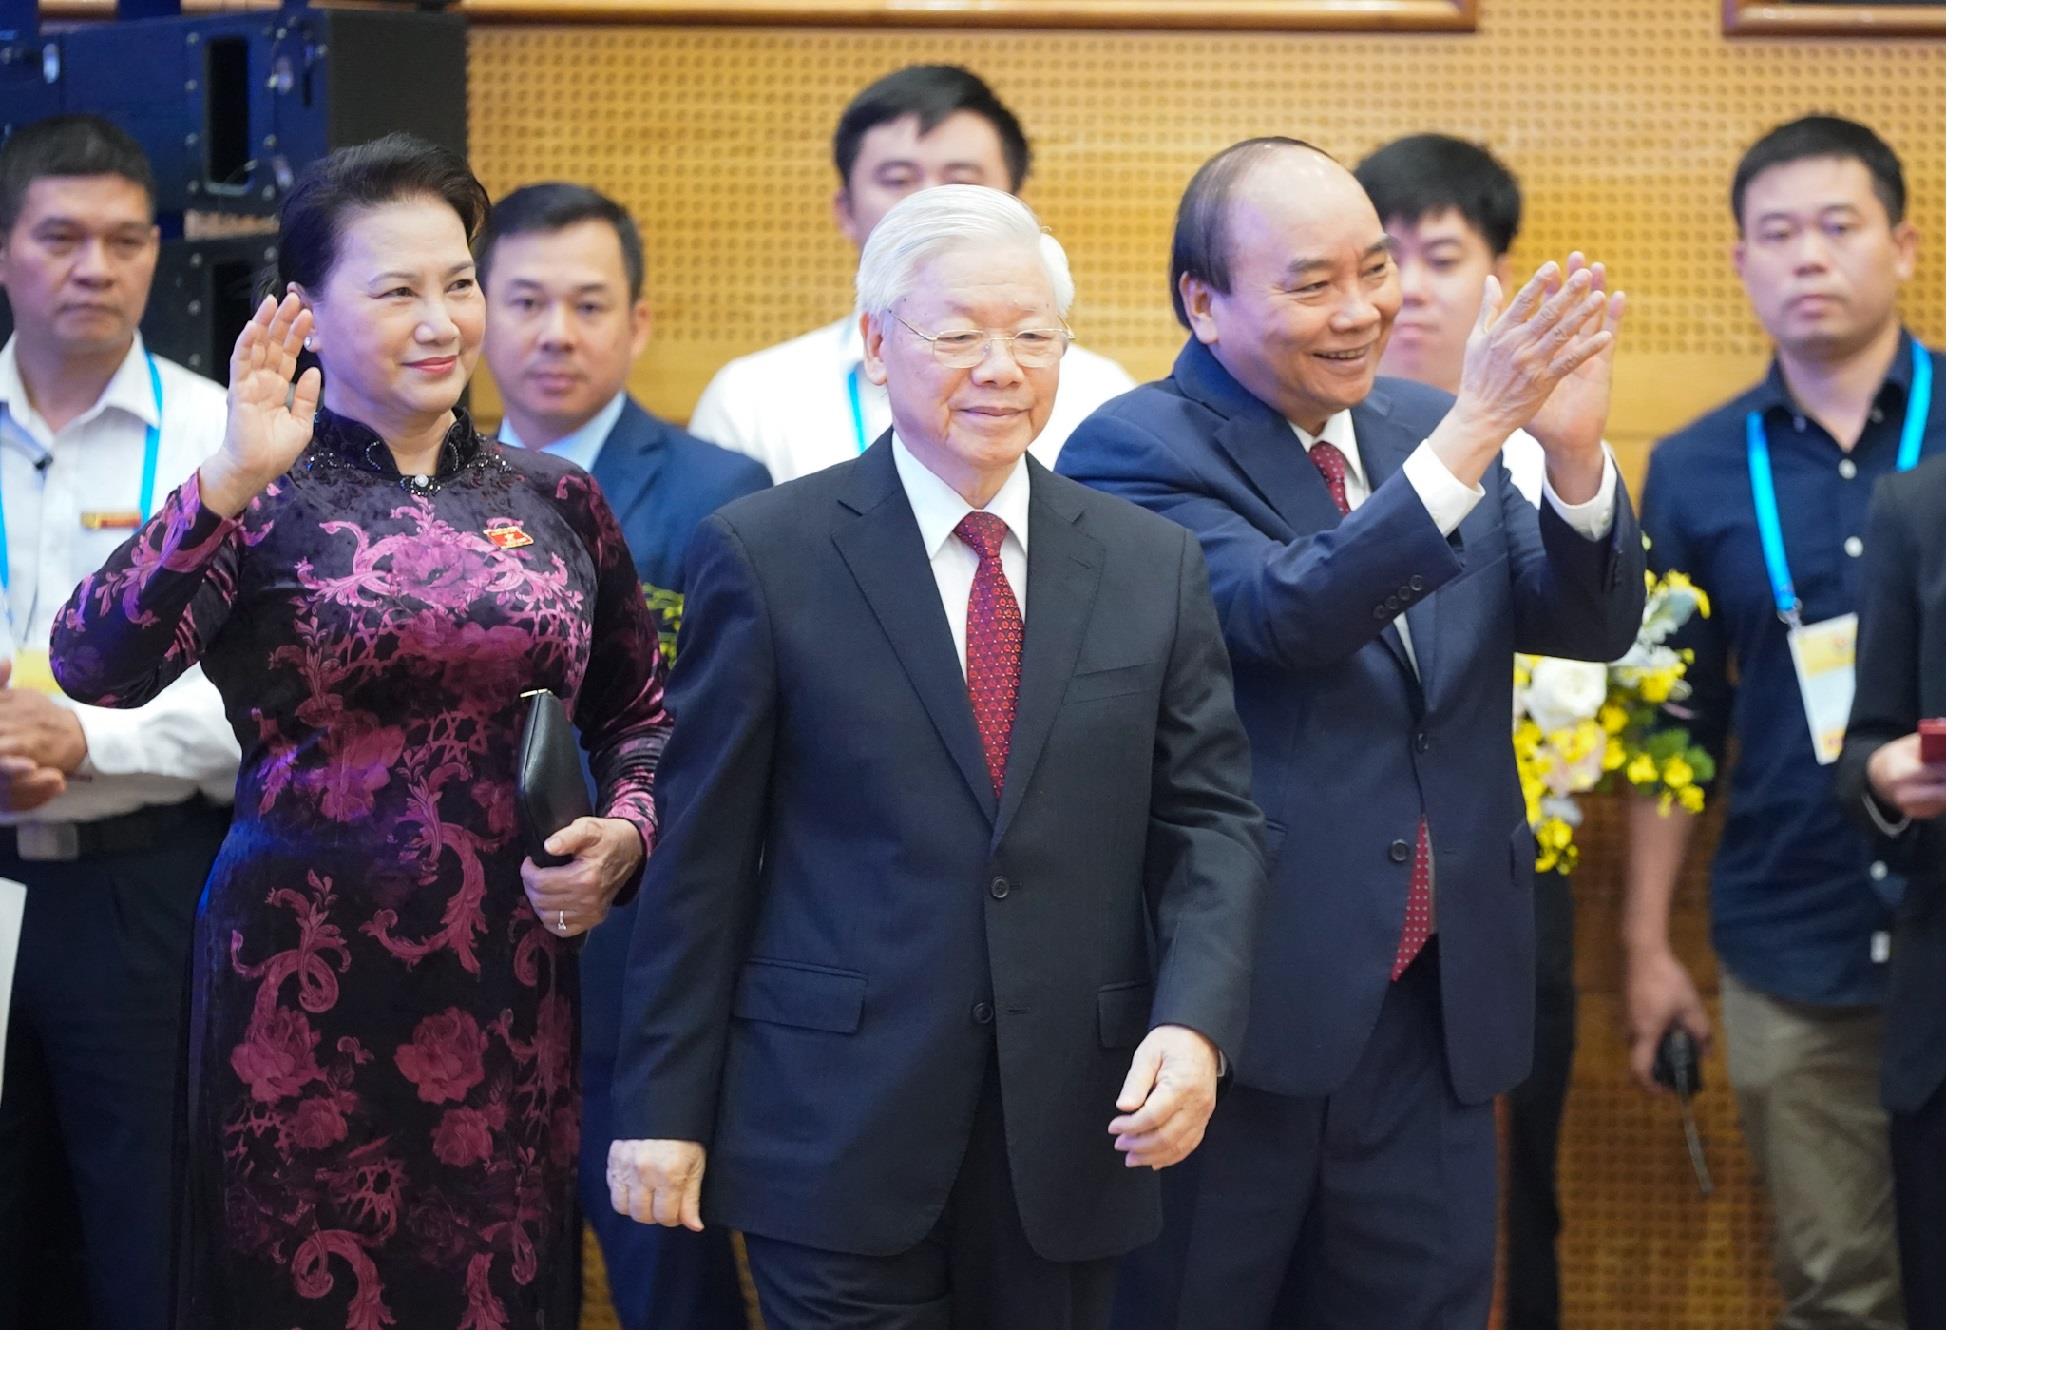 TRỰC TIẾP: Khai mạc Hội nghị Cấp cao ASEAN lần thứ 37